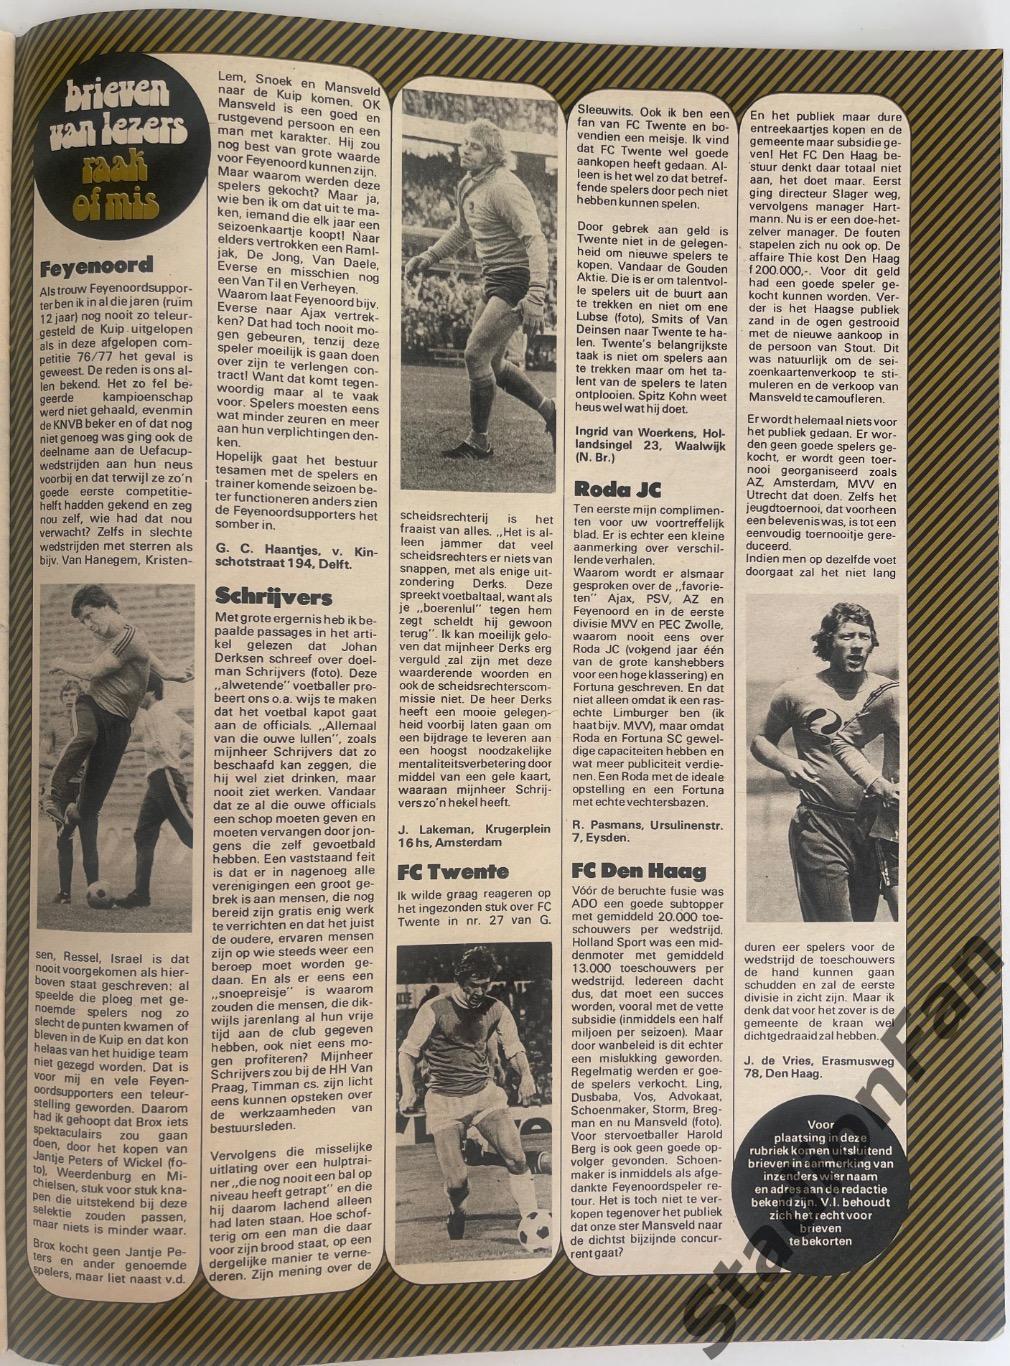 Журнал Voetbal nr.30 - 1977 год. 5